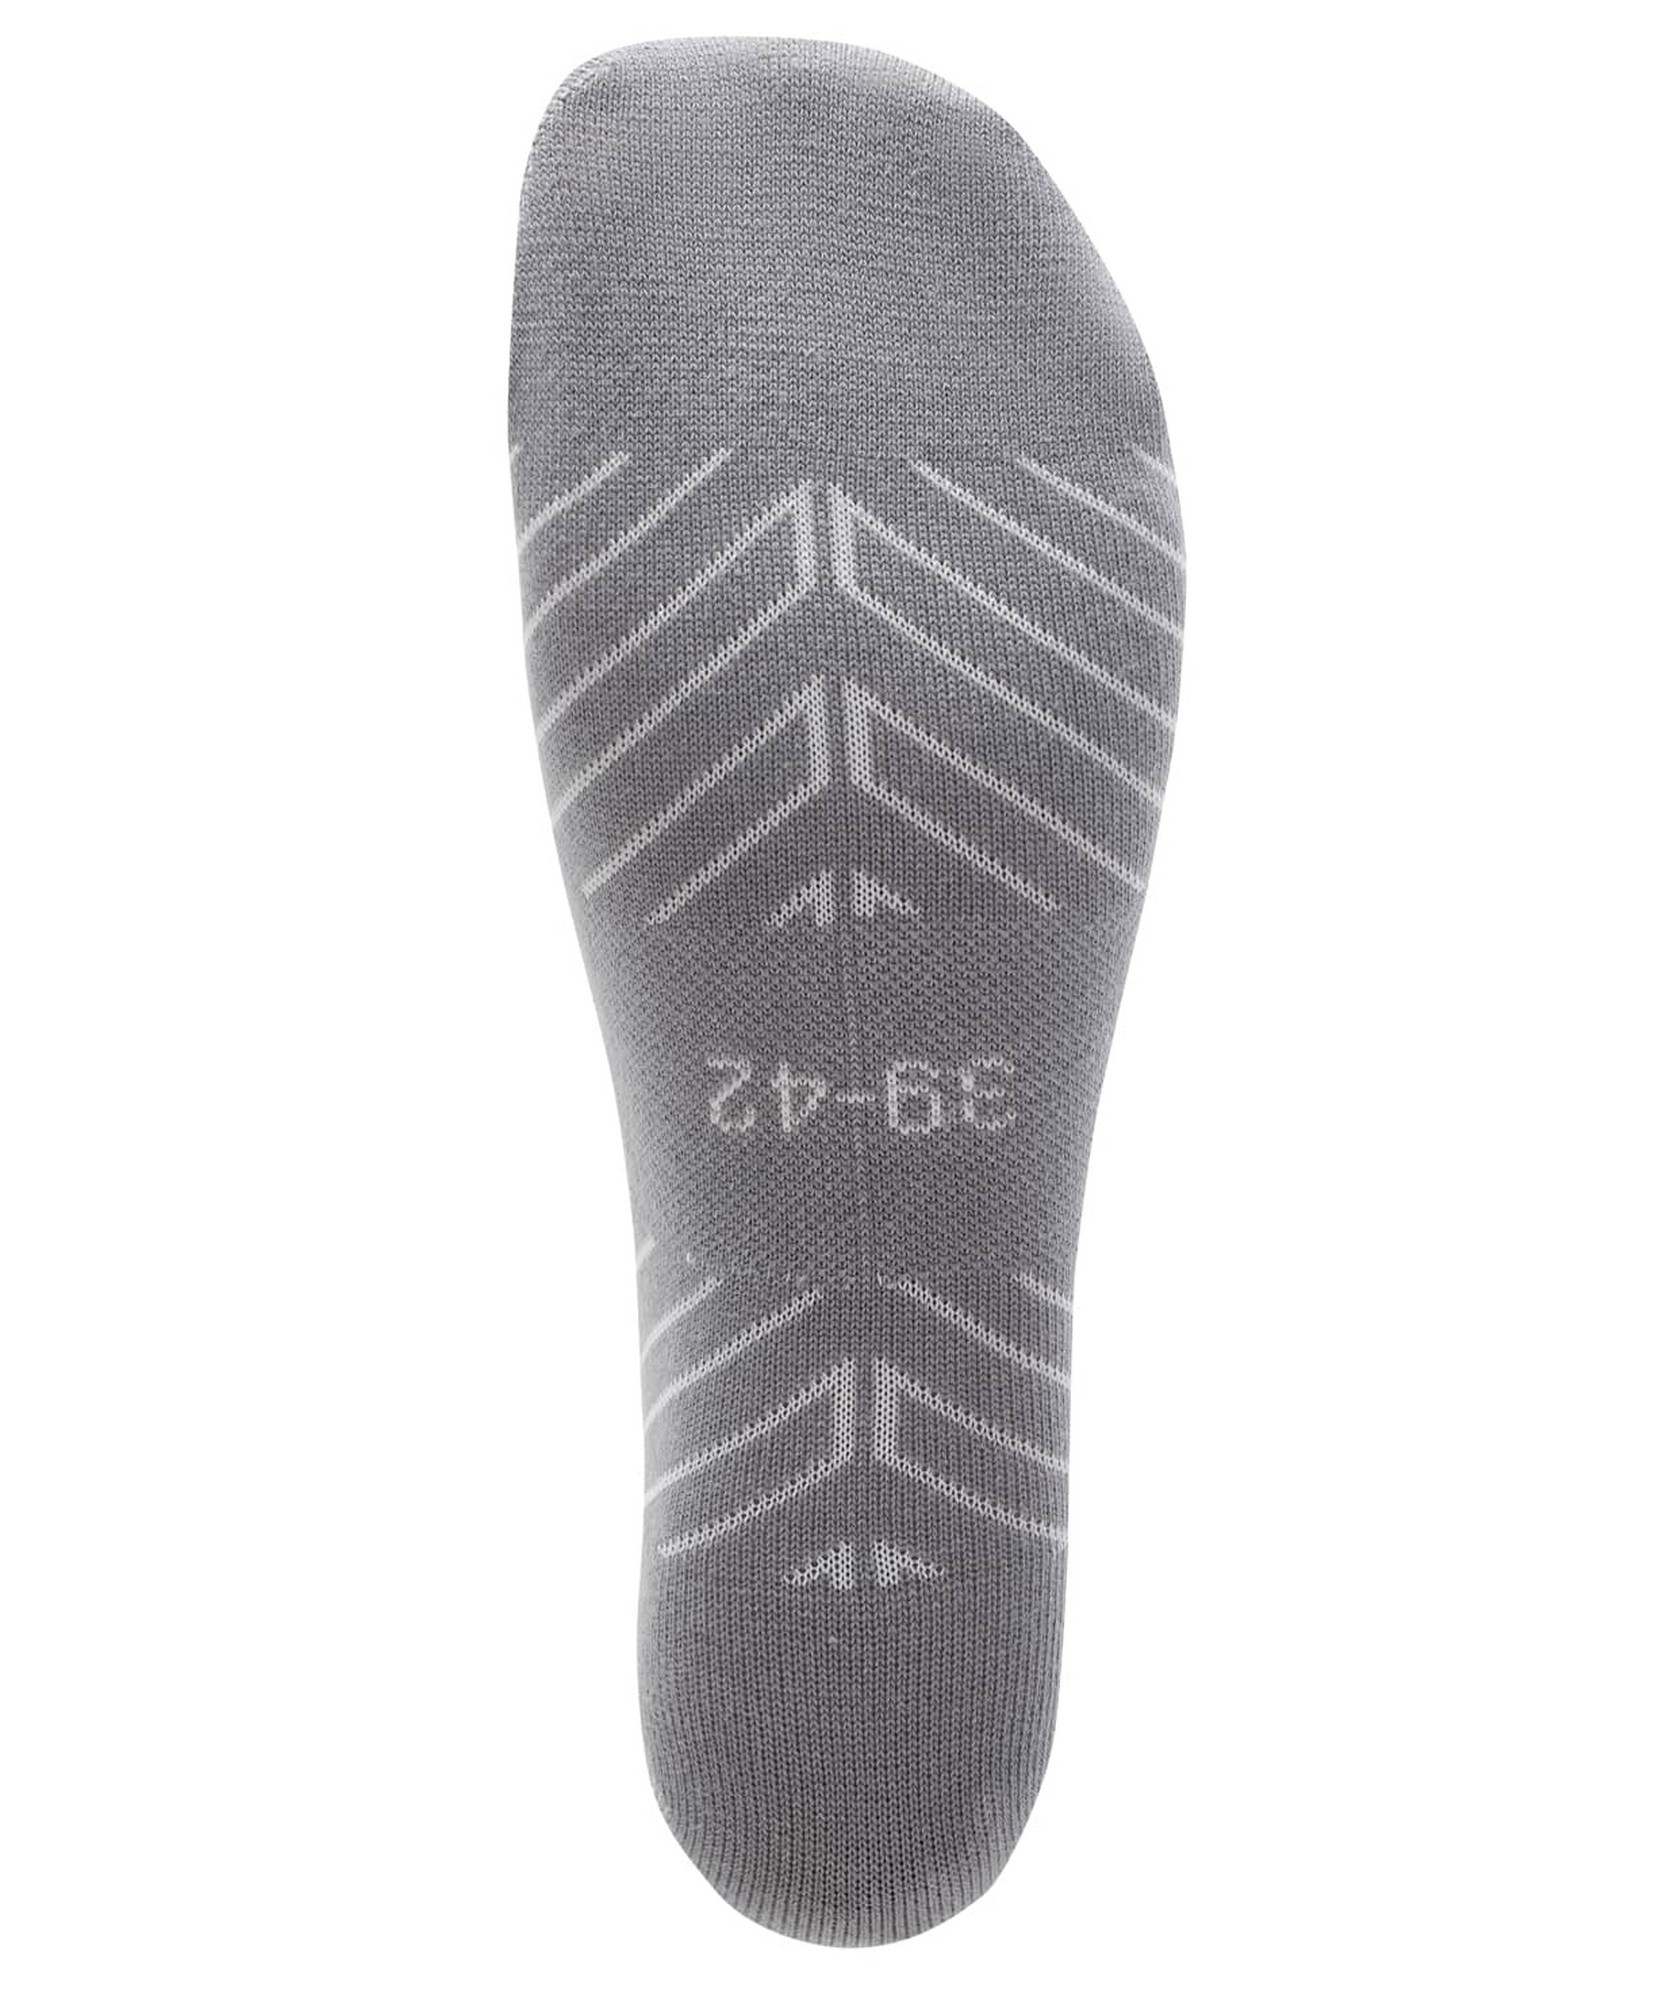 Гетры футбольные Jogel Camp Advanced Socks, белый\серый 1663_2000